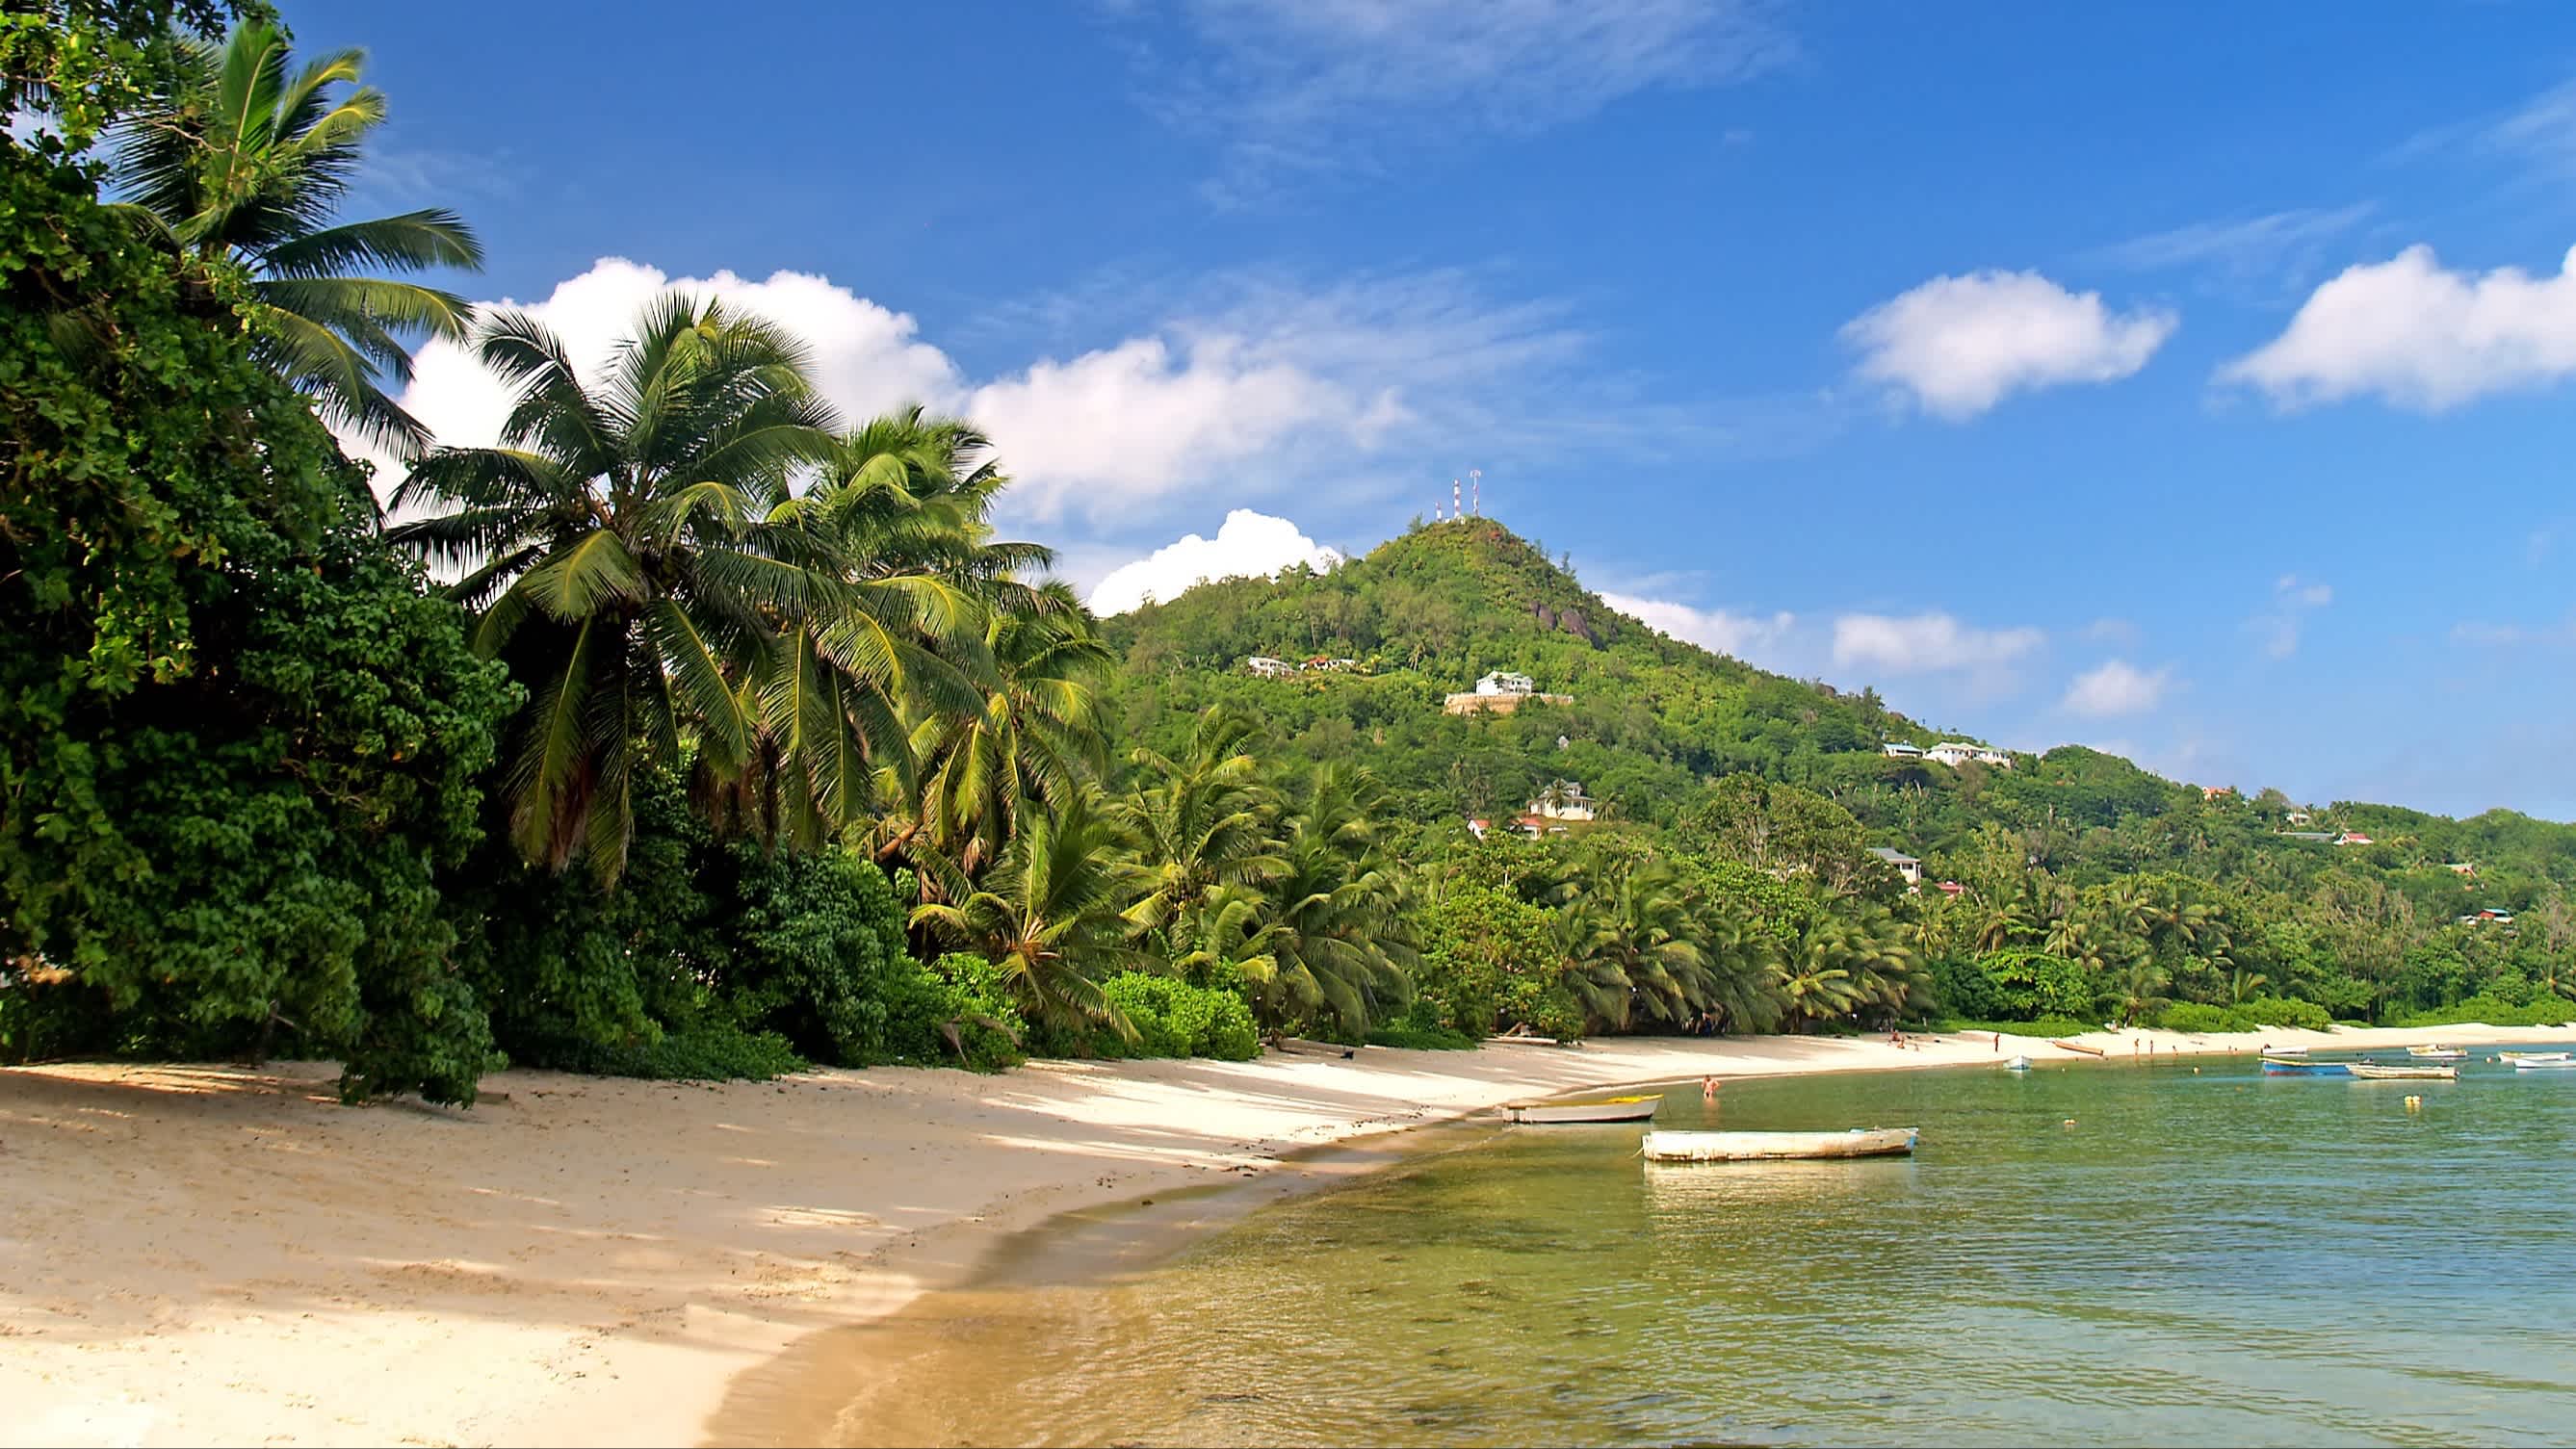 Tropischer Strand Anse Aux Poules Bleues auf der Insel Mahé, Seychellen bei Ebbe mit Menschen im Wasser und kleinen Booten sowie Palmen und grüner Vegetation bei Sonnenschein.